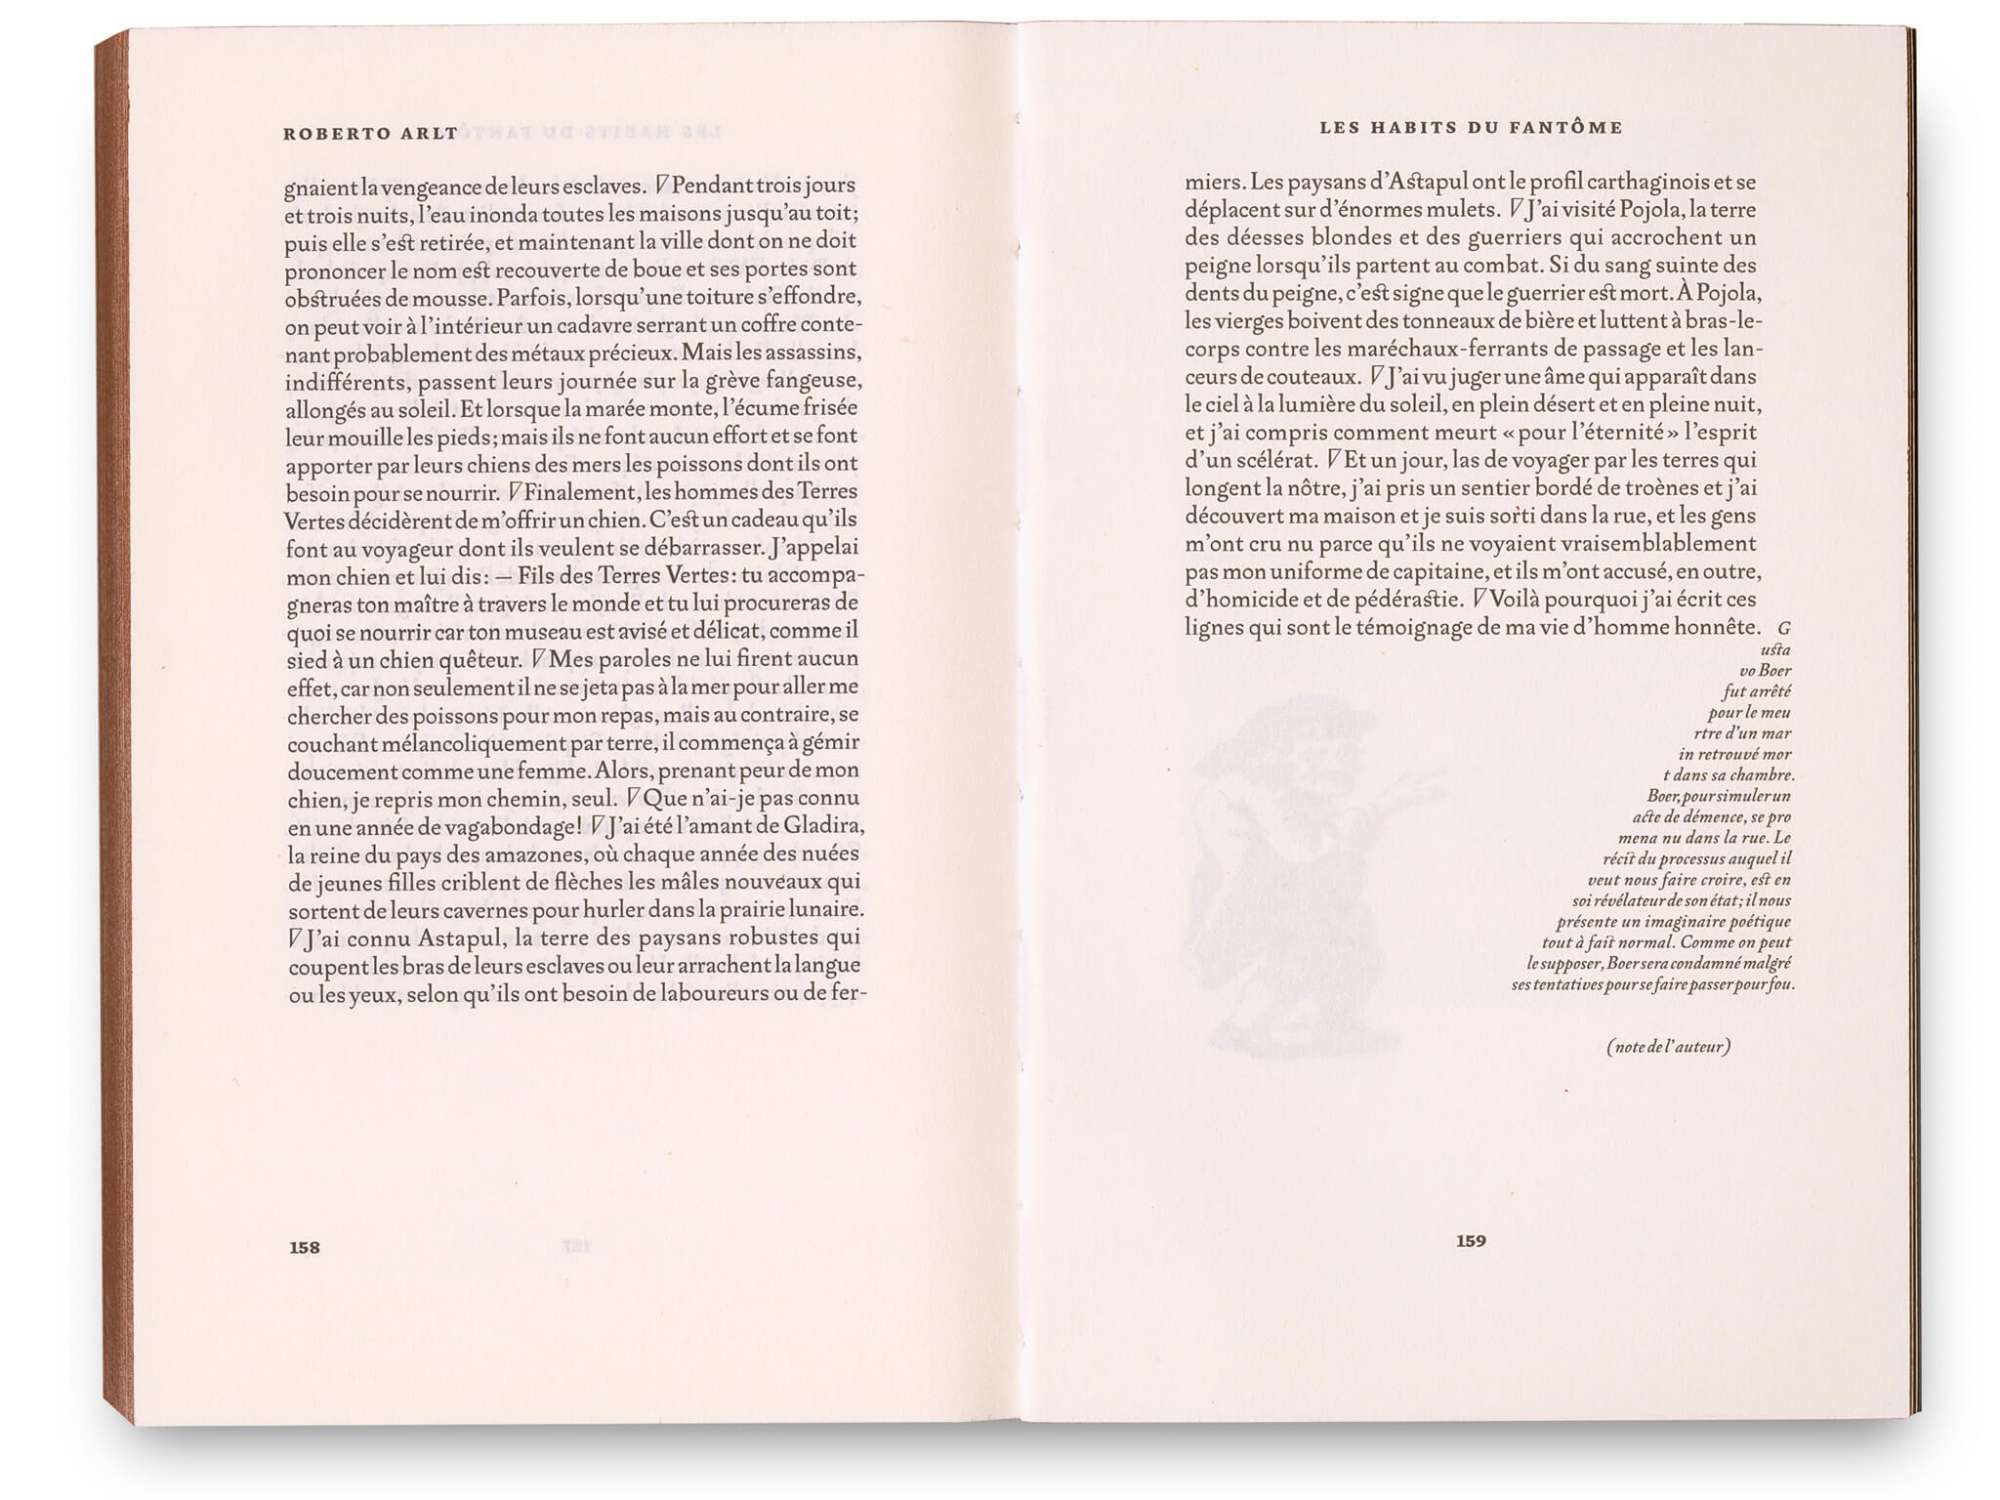 Roberto Arlt Le petit bossu Éditions cent pages pages intérieures 158-159 Nouvelle Les habits du fantôme